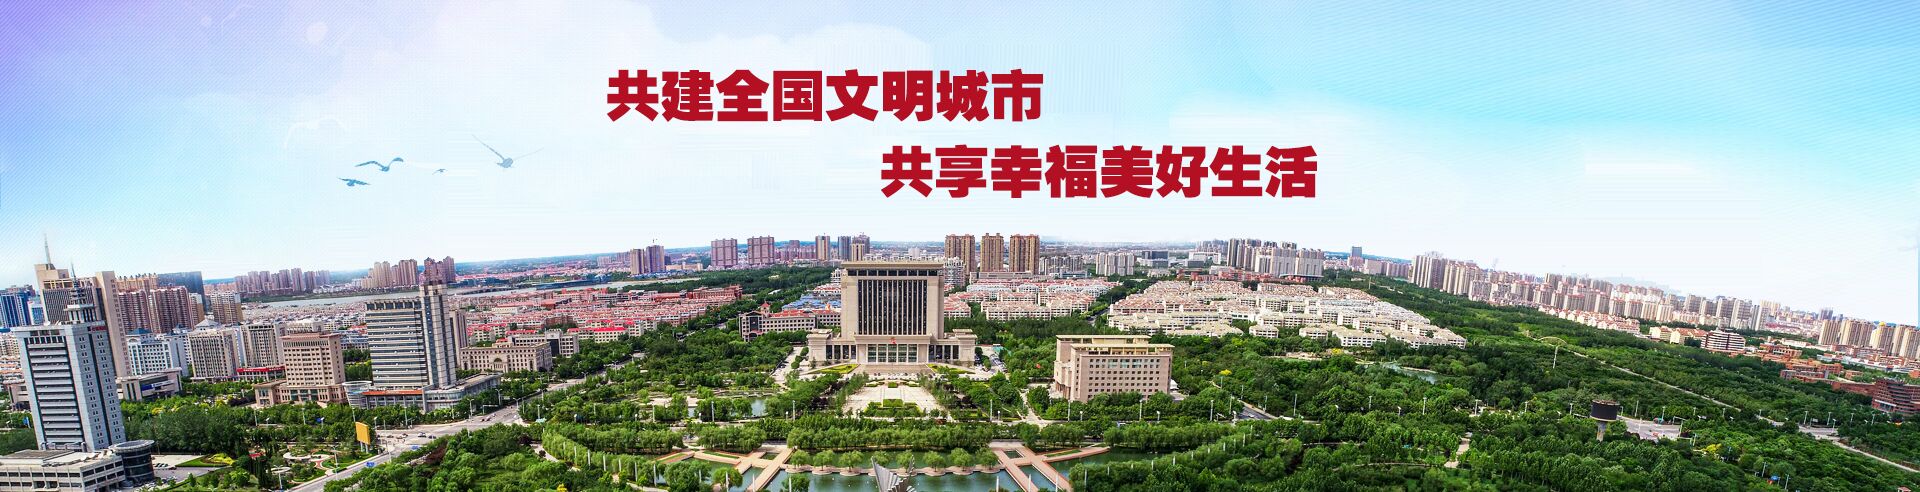 中國.濱州創建文明城市宣傳專題